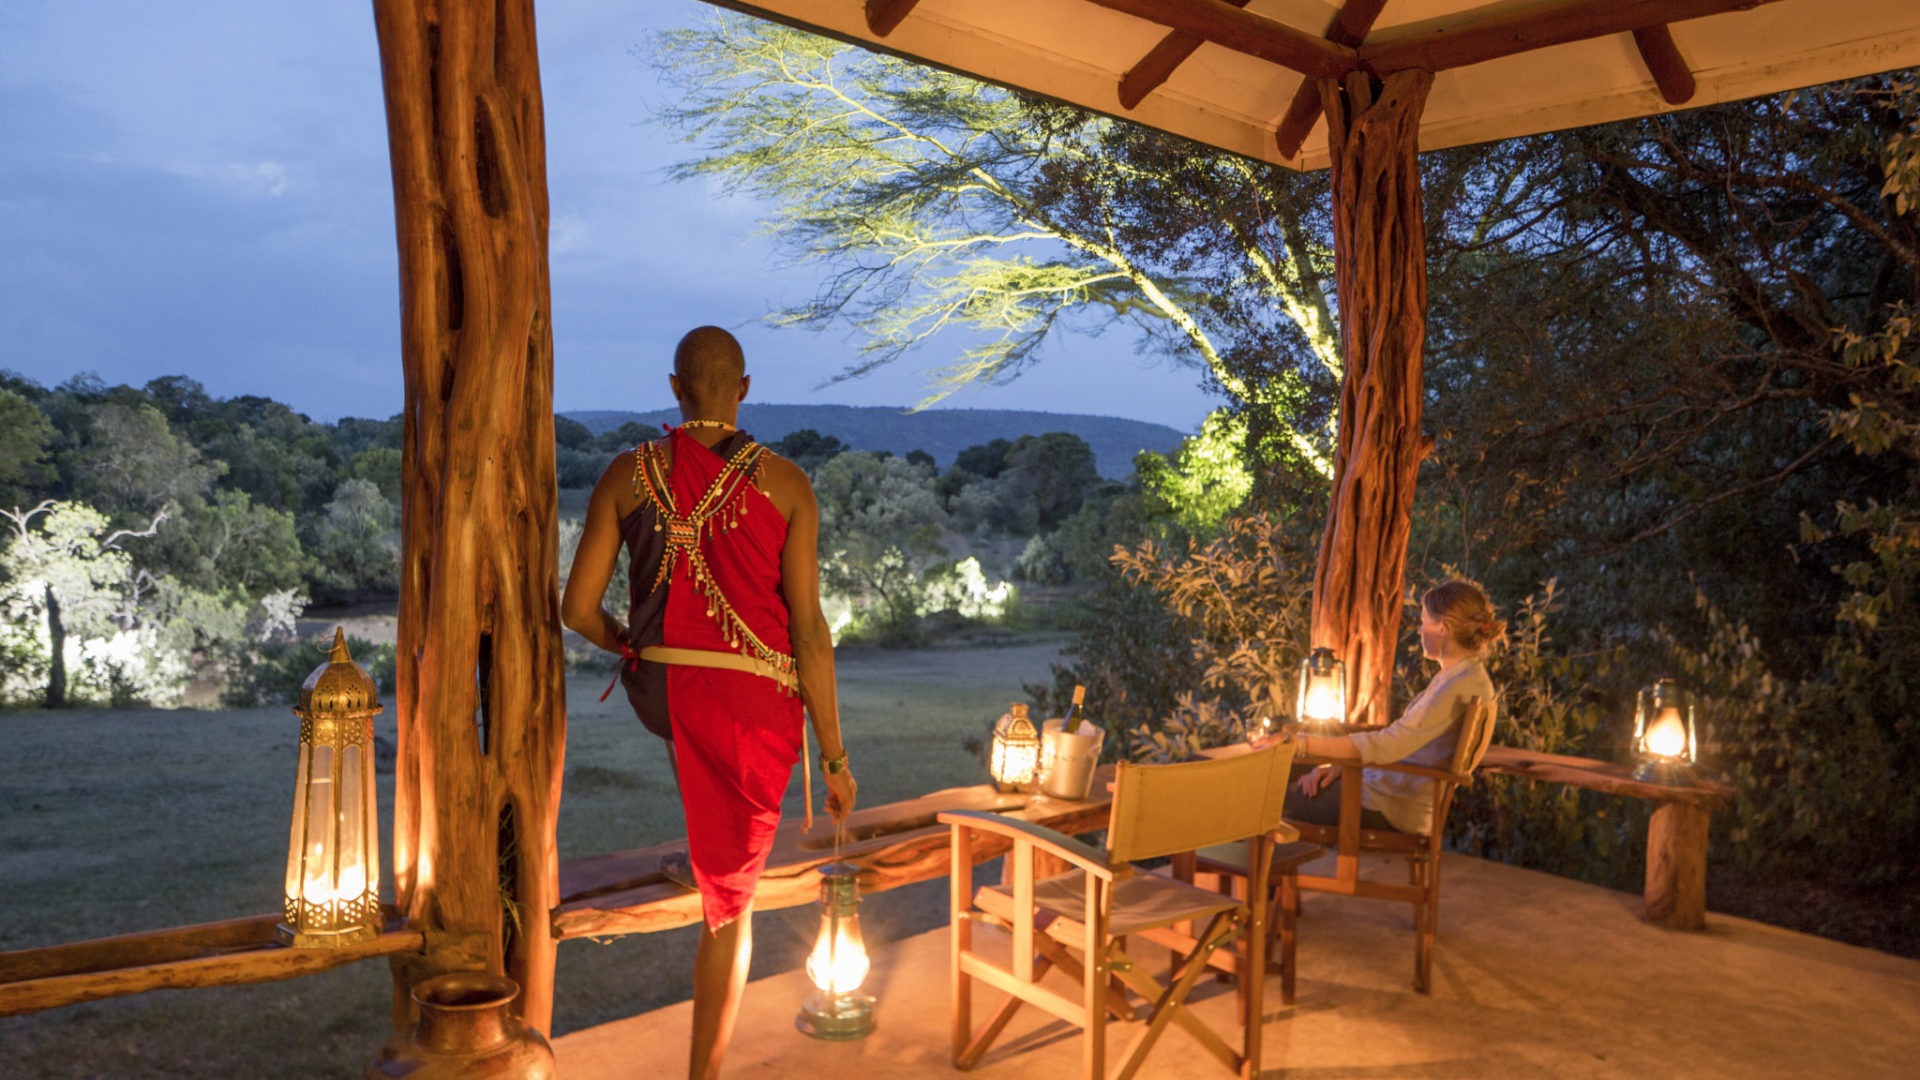 Masai Mara Acacia House View from stoep 6R1A5132 highres